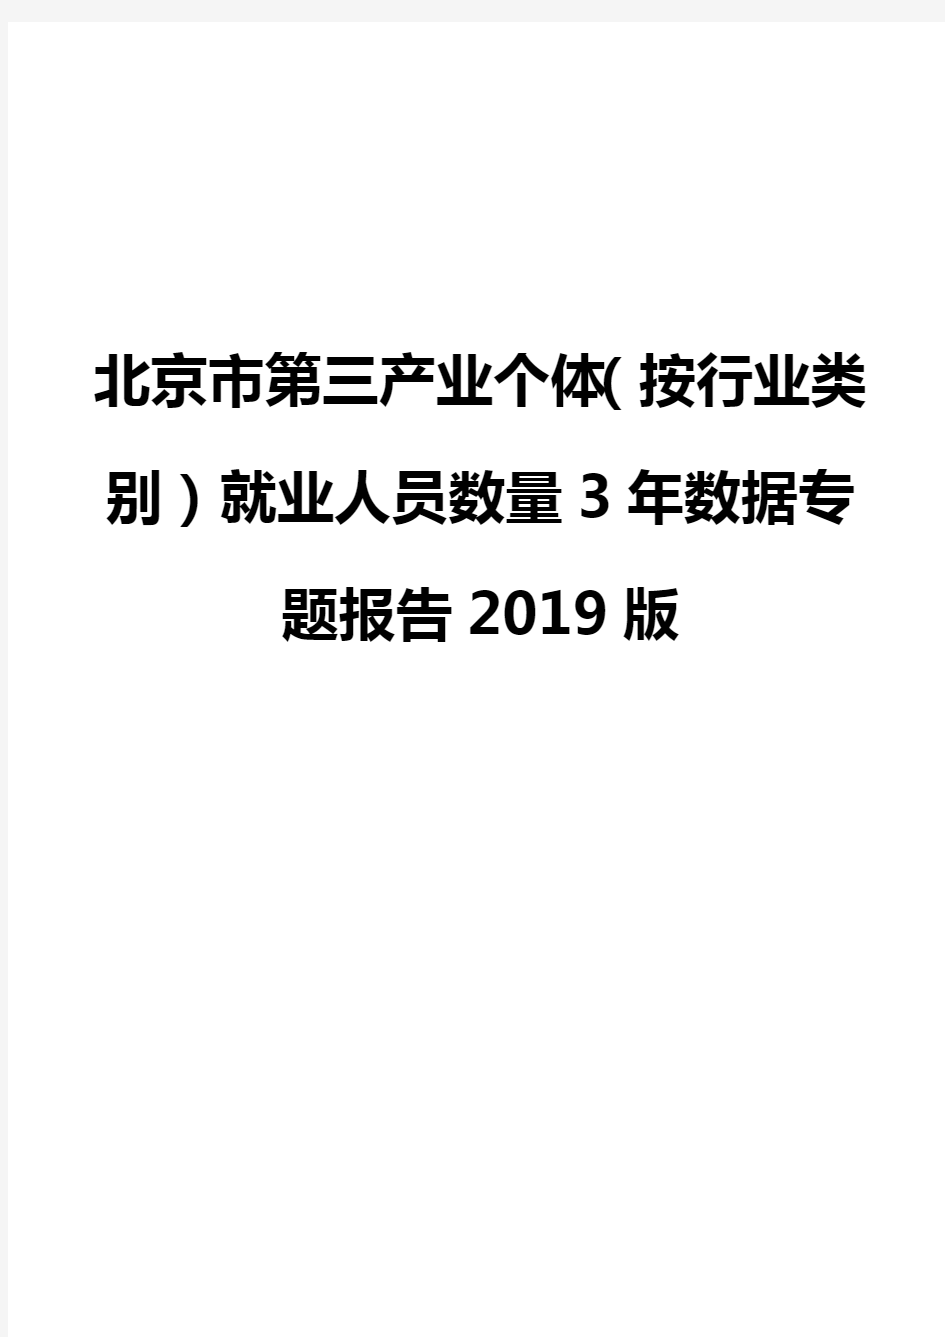 北京市第三产业个体(按行业类别)就业人员数量3年数据专题报告2019版